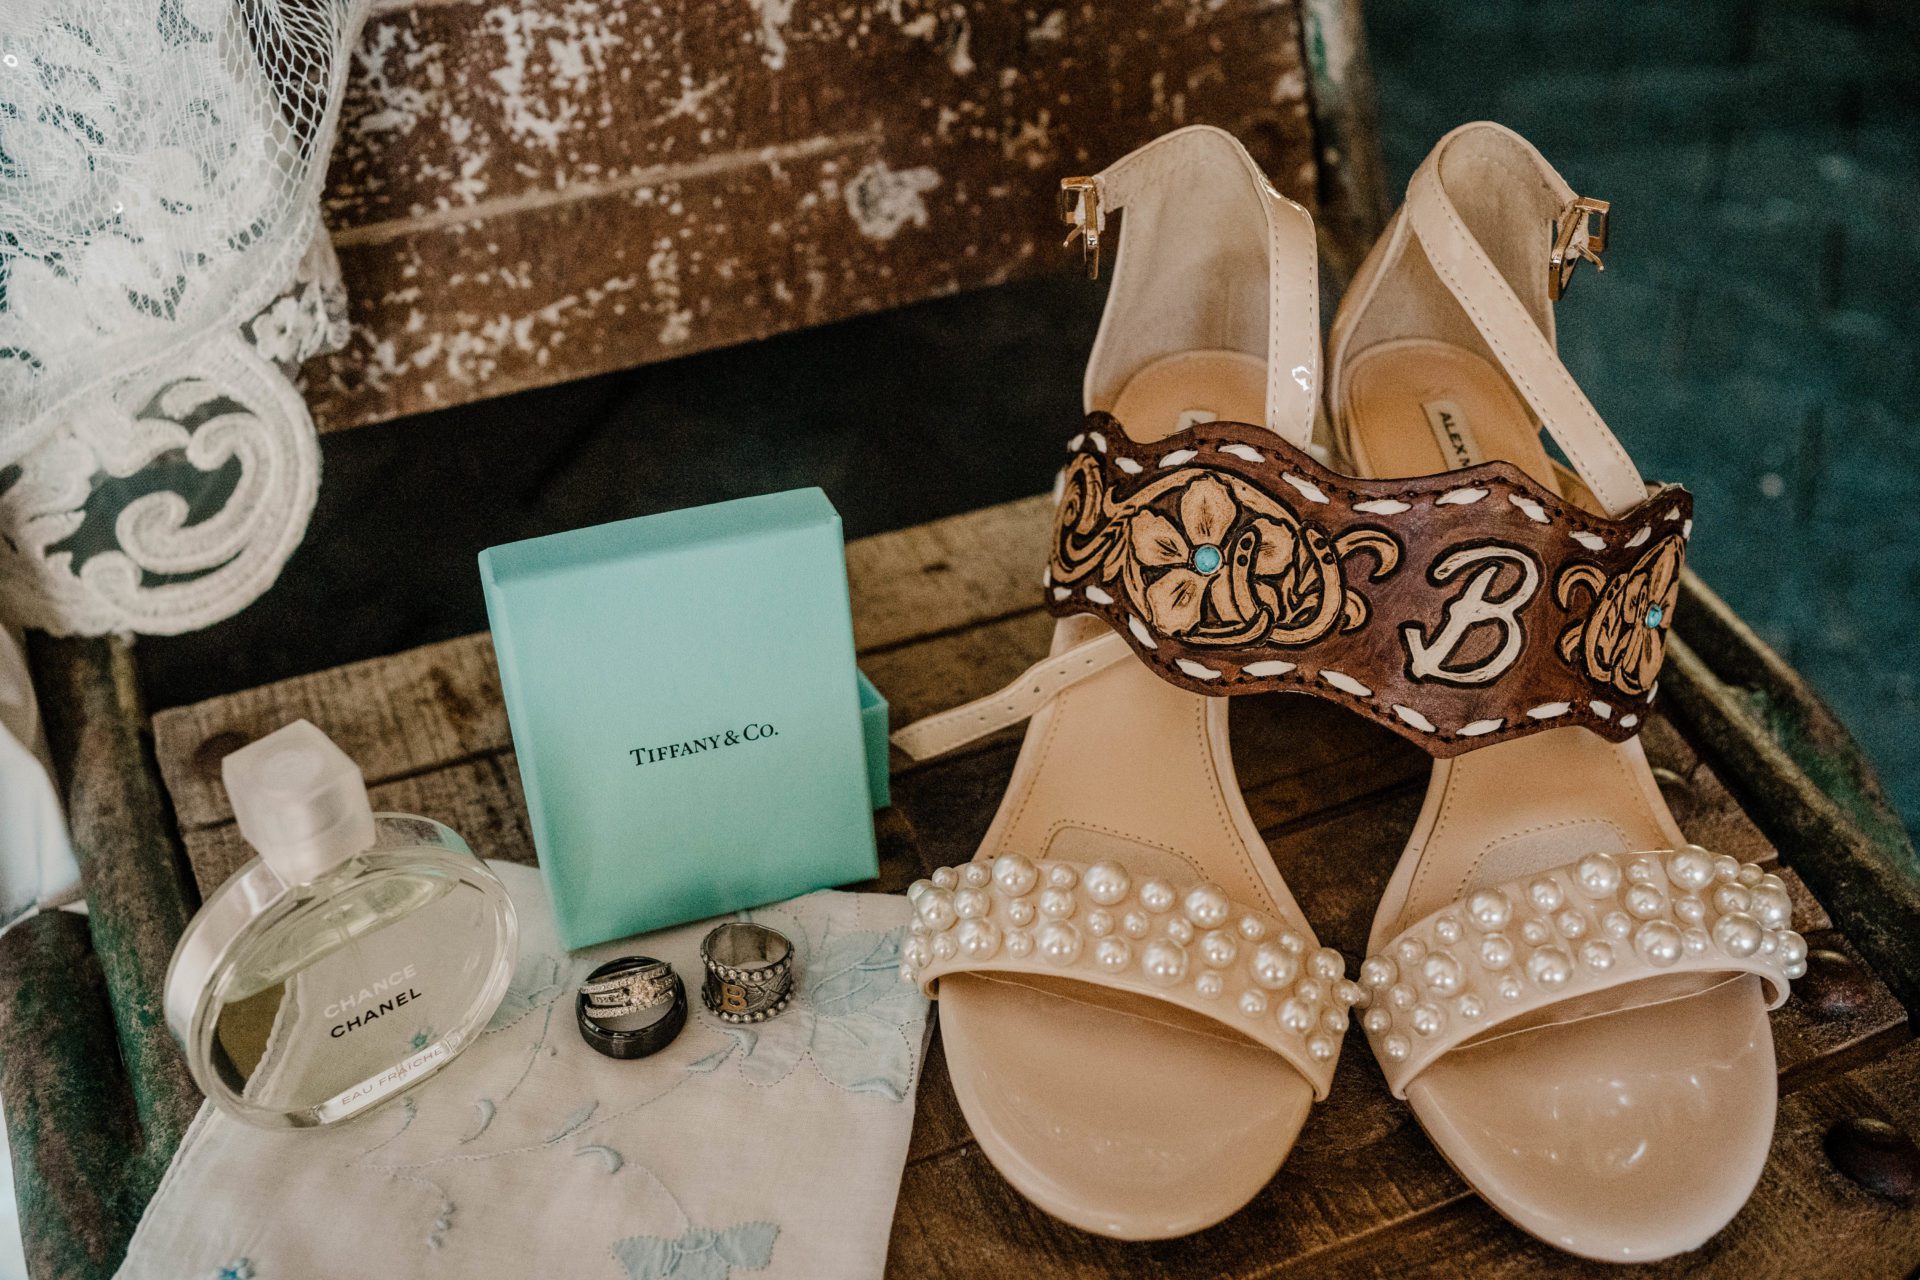 Wedding detail shot, showing shoes, rings, etc.